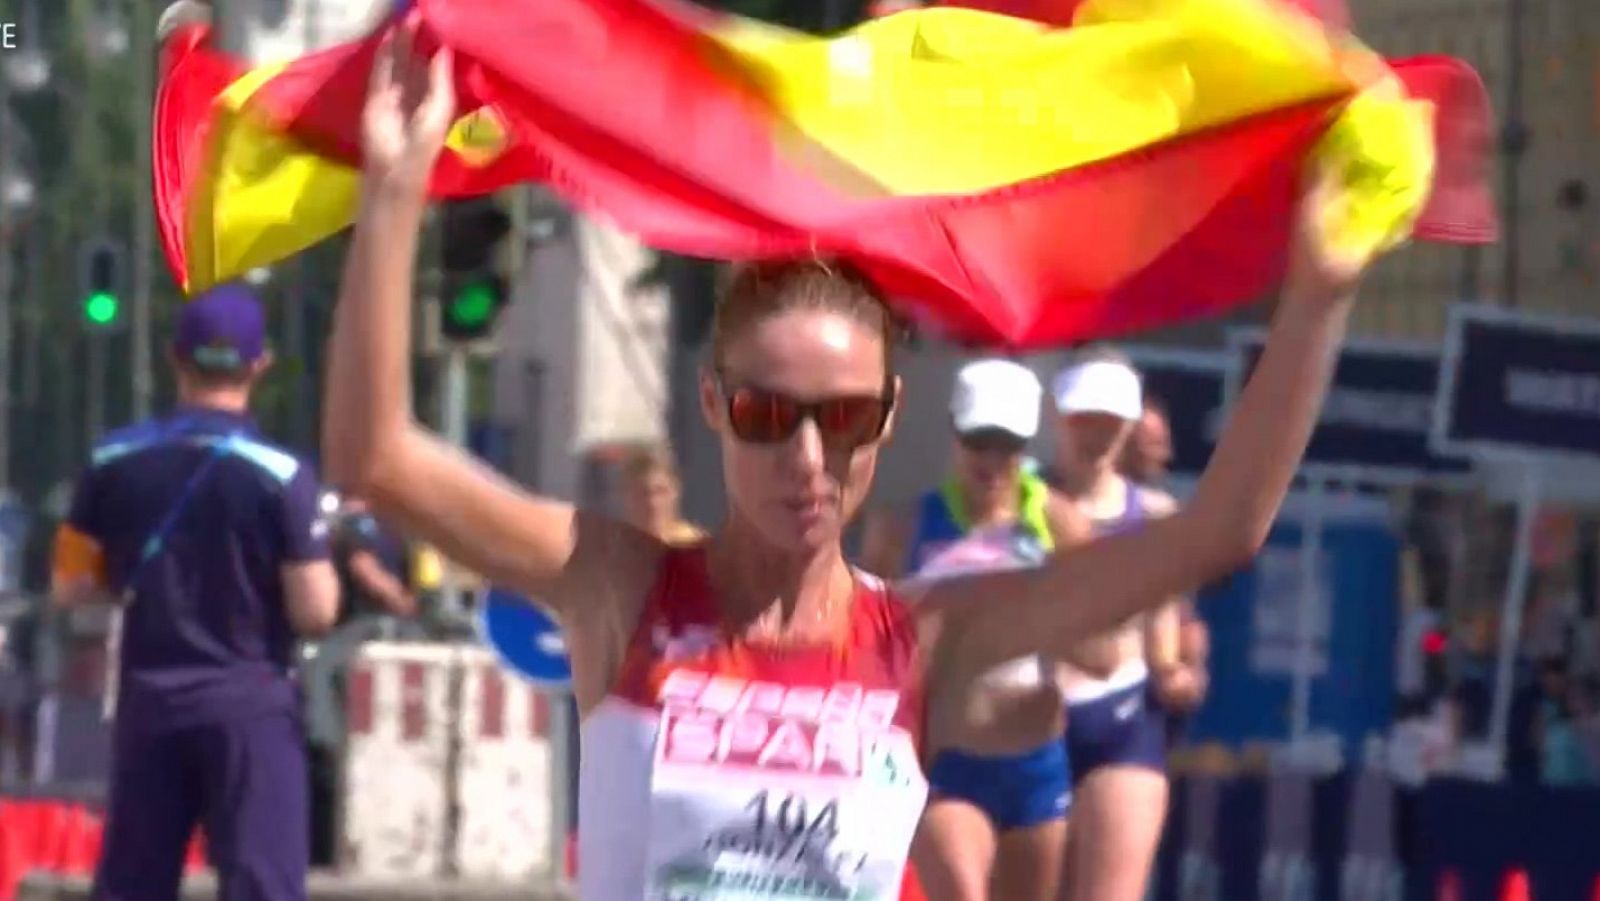 Atletismo | Raquel González, plata en 35 km marcha en Múnich